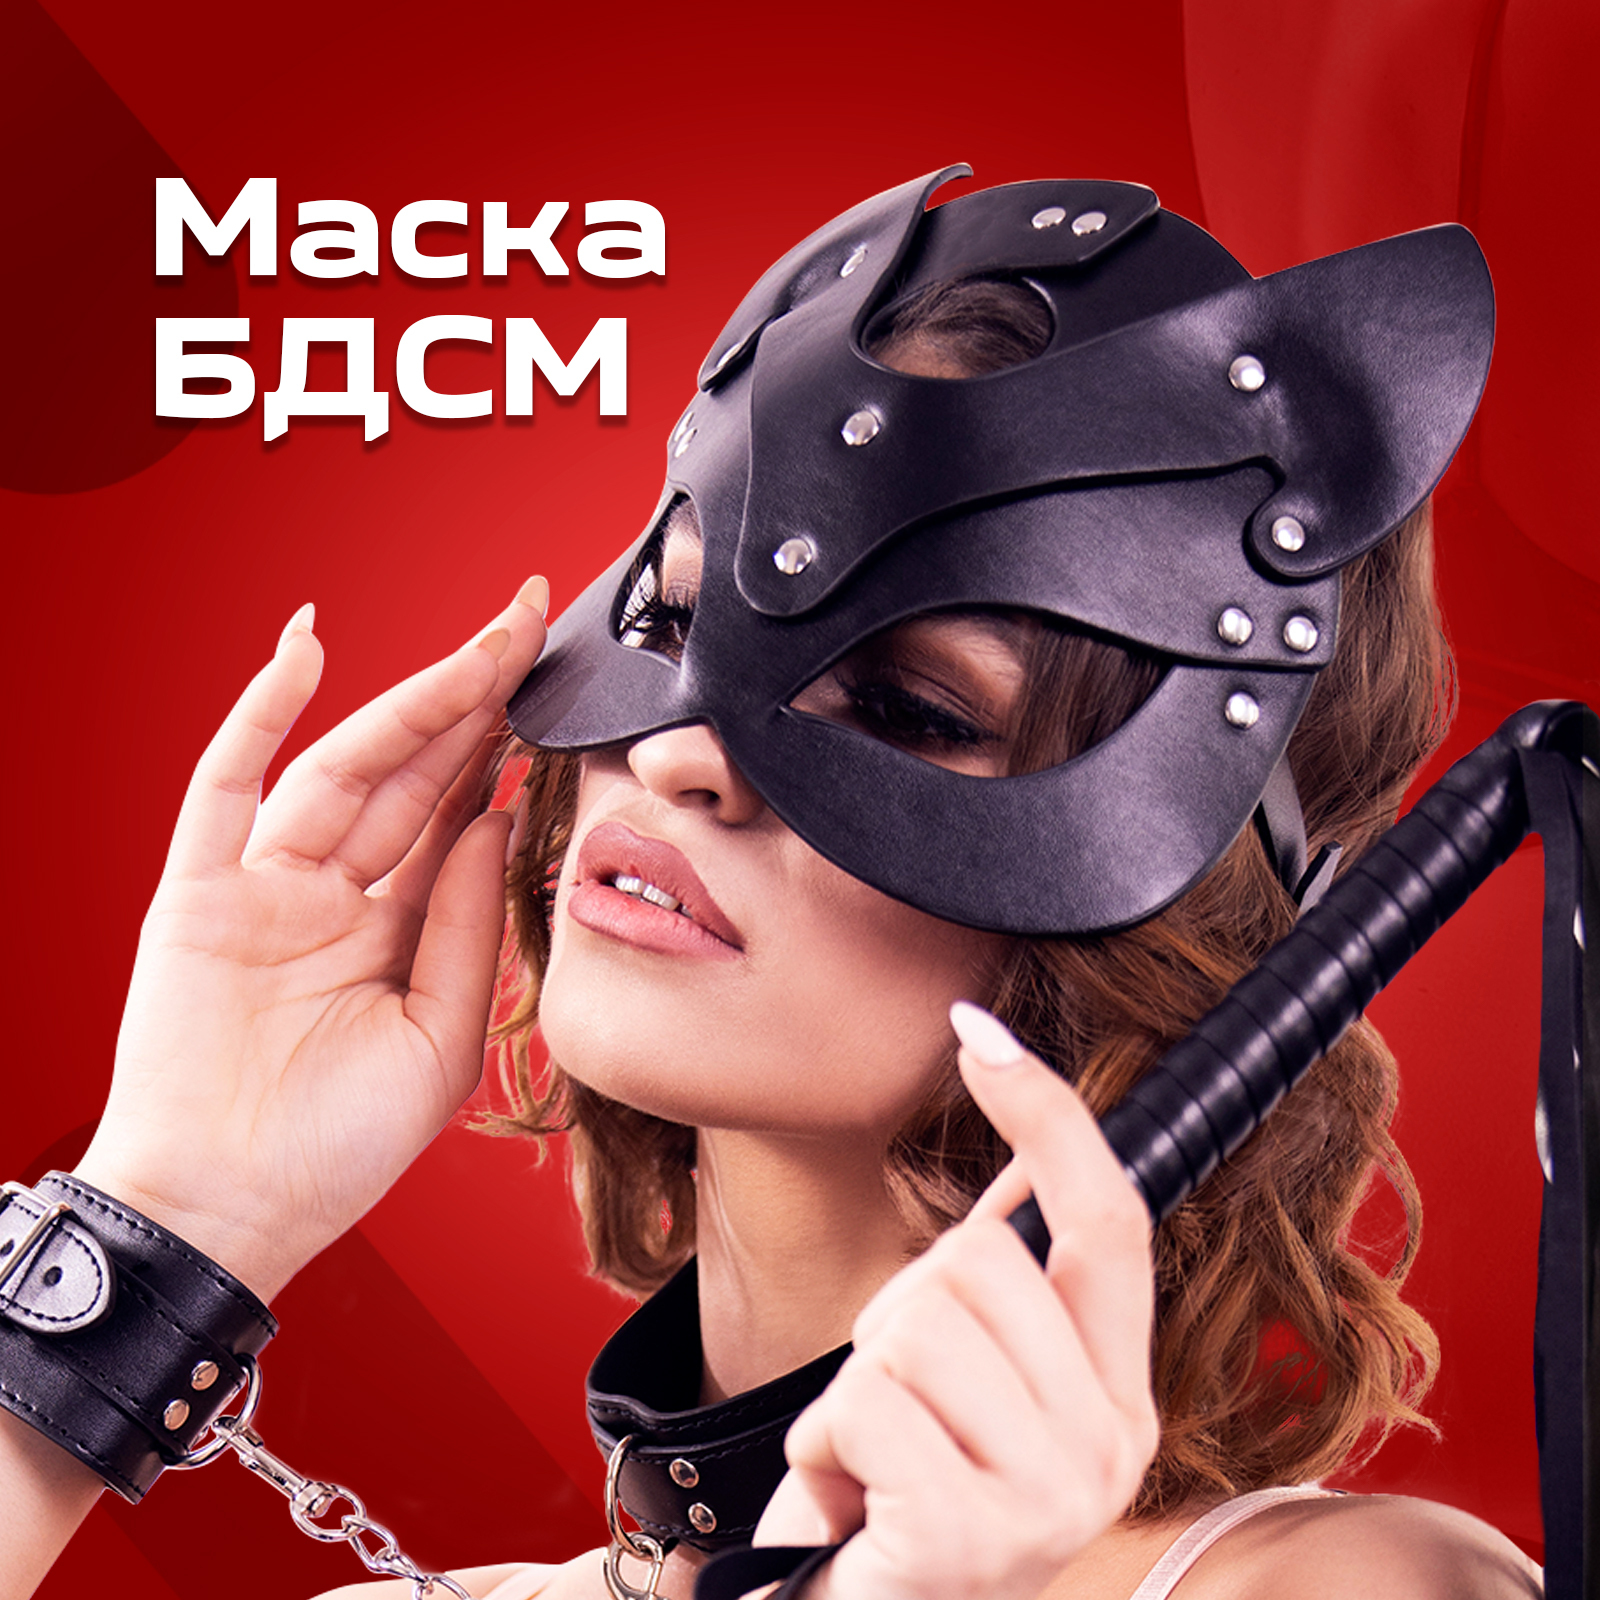 БДСМ маска с отверстием, виниловая, черная – купить в Киеве, цена в Украине | Sex is Good